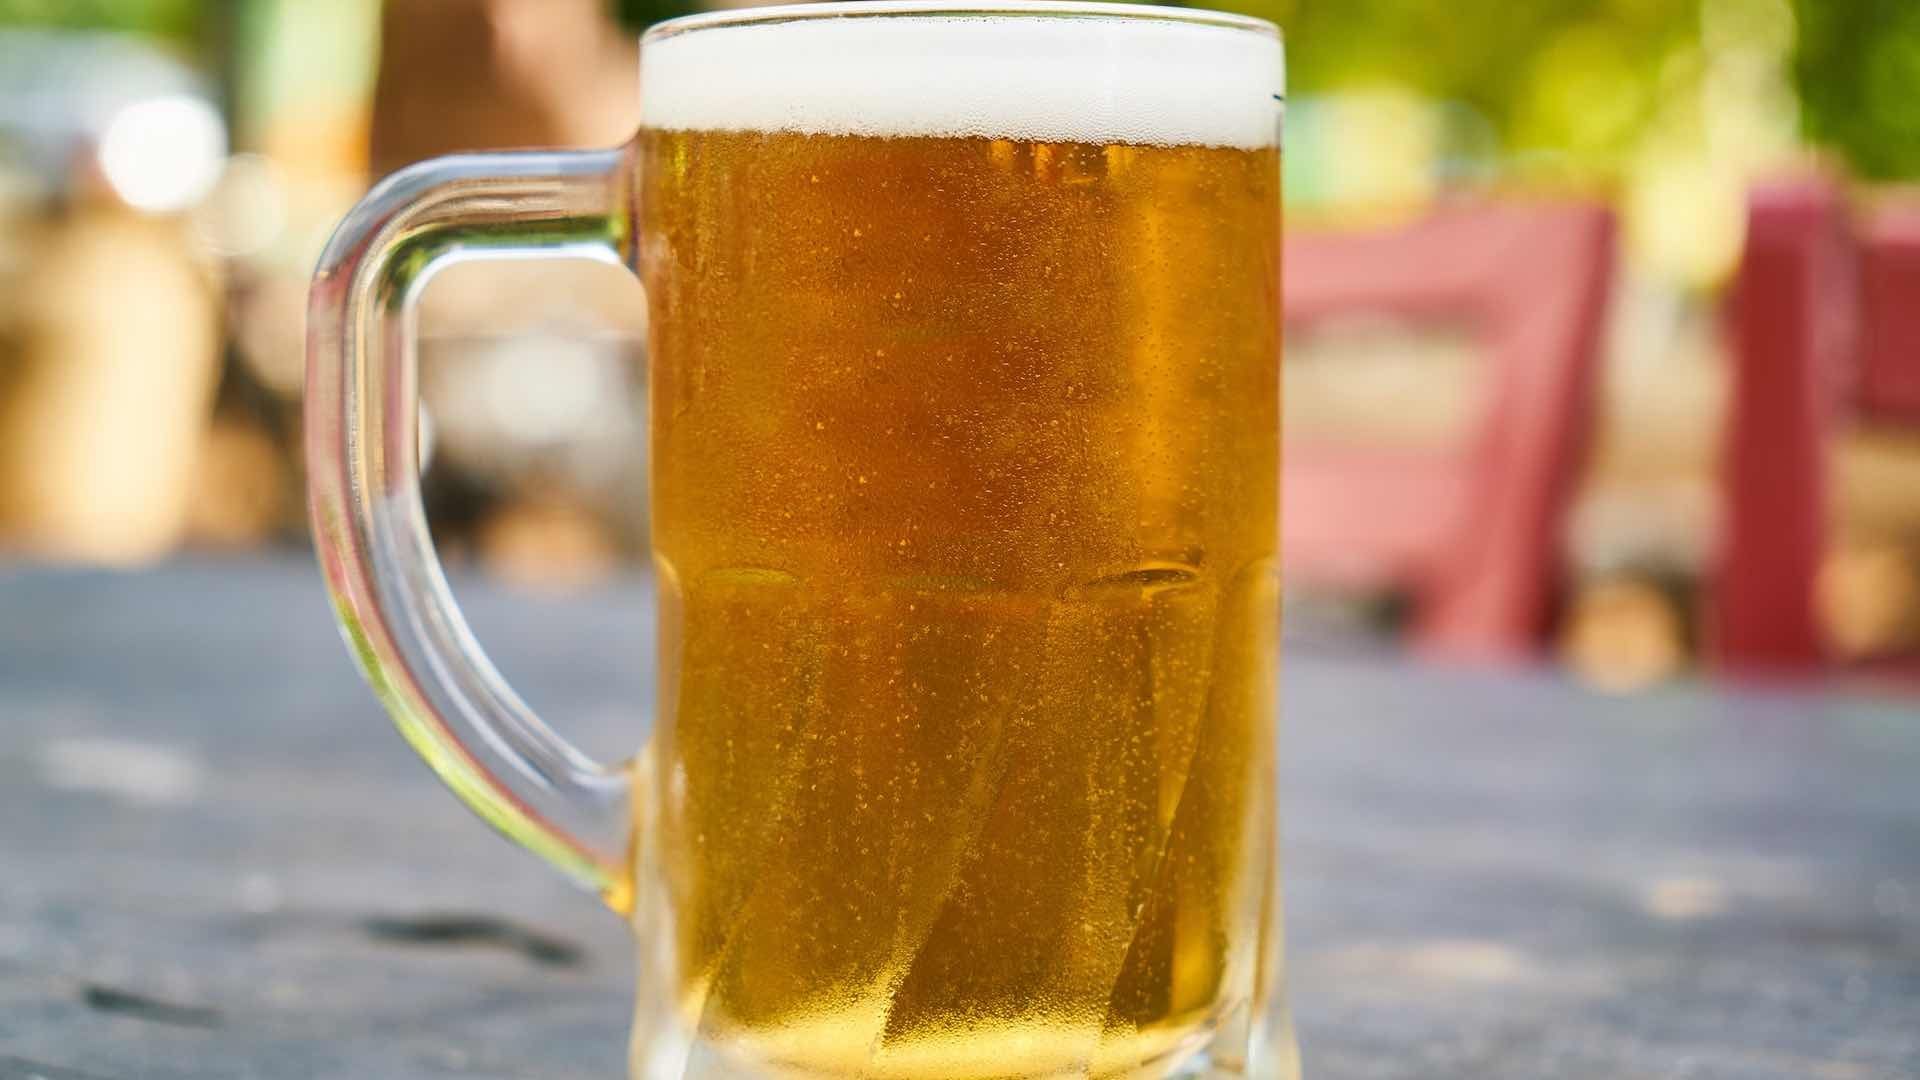 Las cervezas aumentaron su precio promedio un 8% 